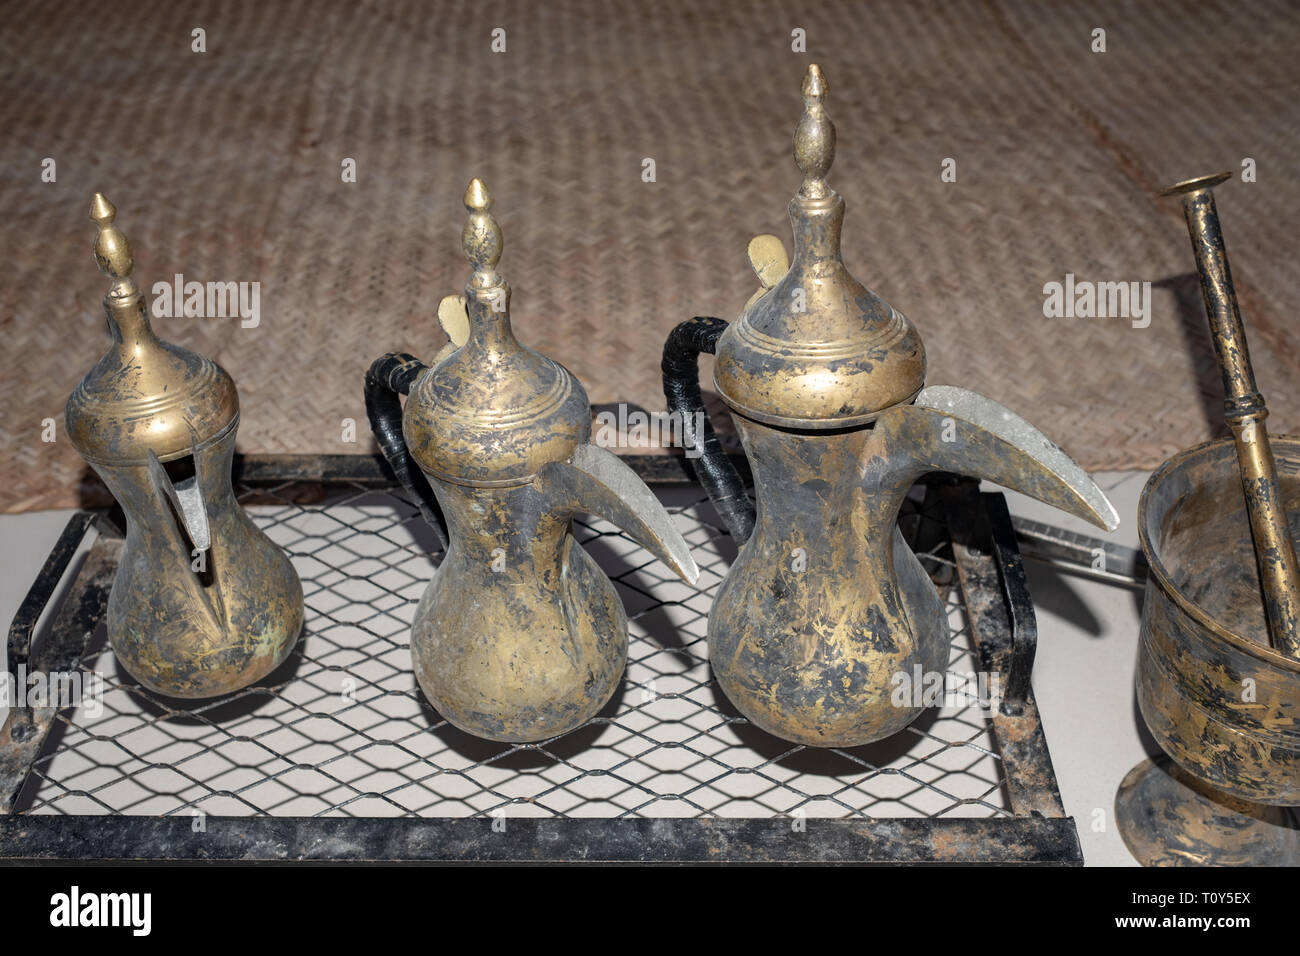 Dettaglio colpo di tradational arabo ottone teiere, Abu Dhabi, Emirati arabi  uniti Foto stock - Alamy